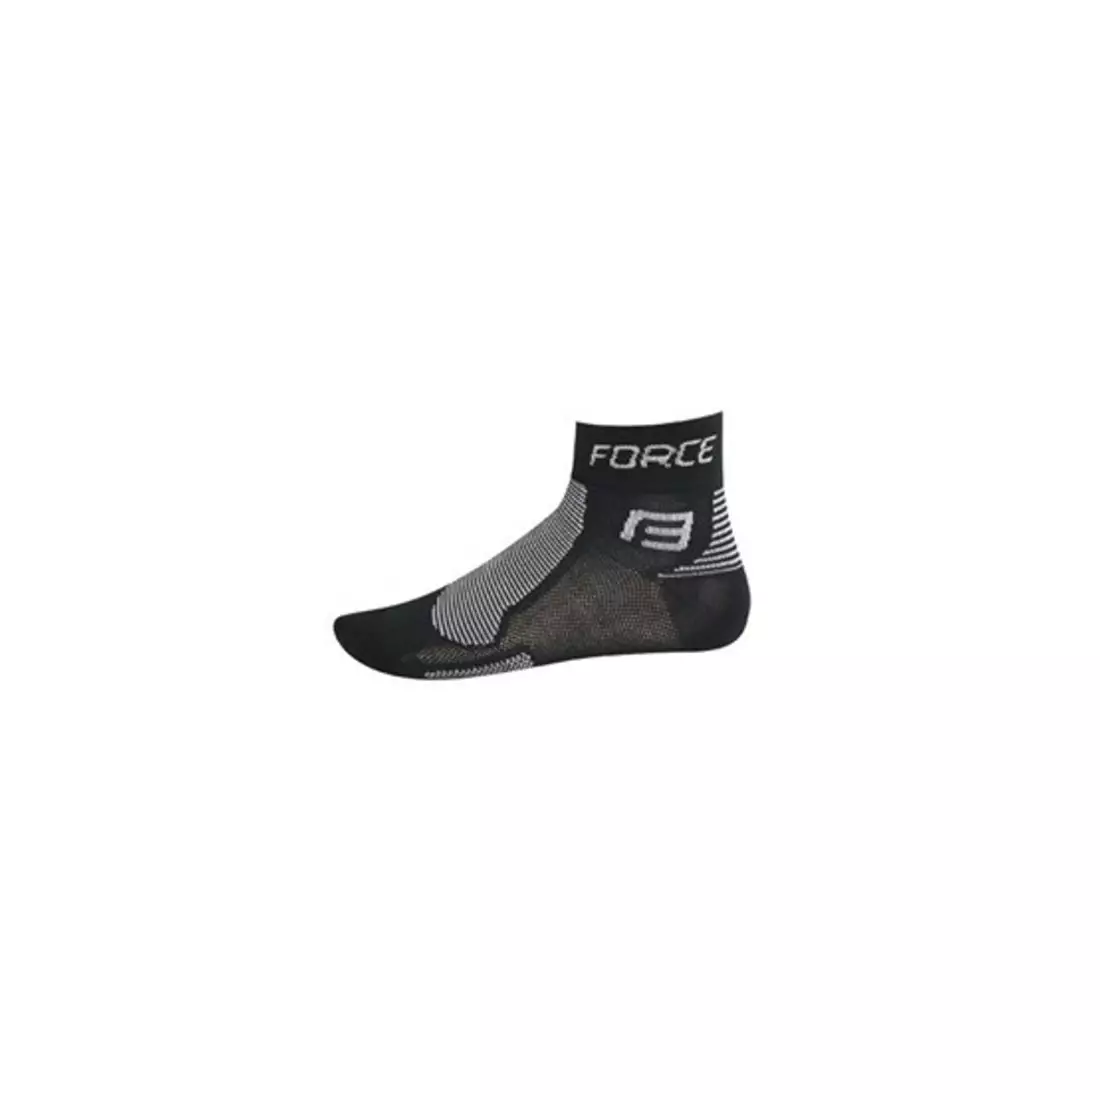 FORCE socks 9010, color: black